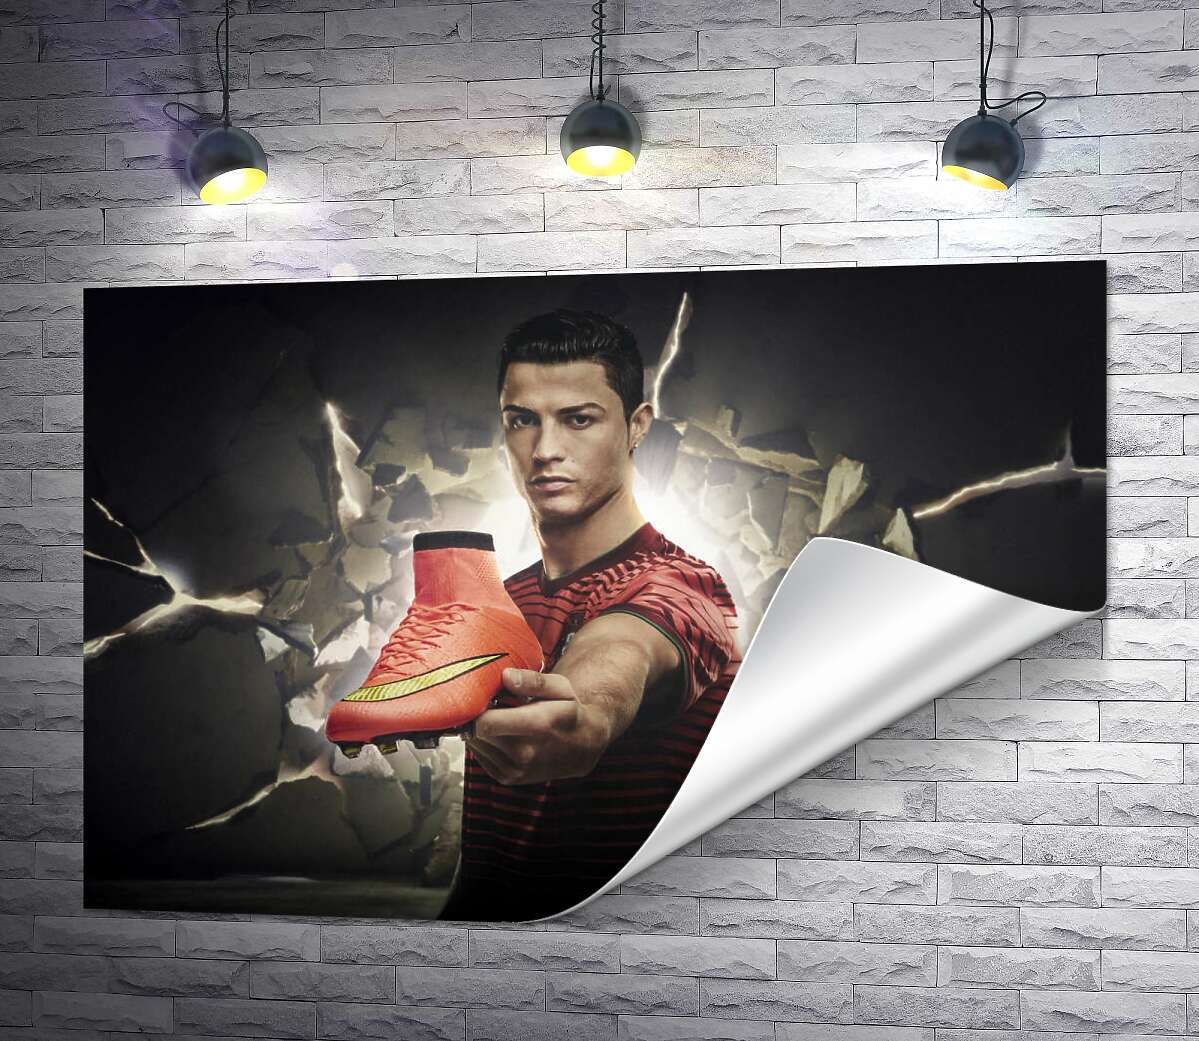 друк Кріштіану Роналду (Cristiano Ronaldo) рекламує футбольні бутси від фірми Nike